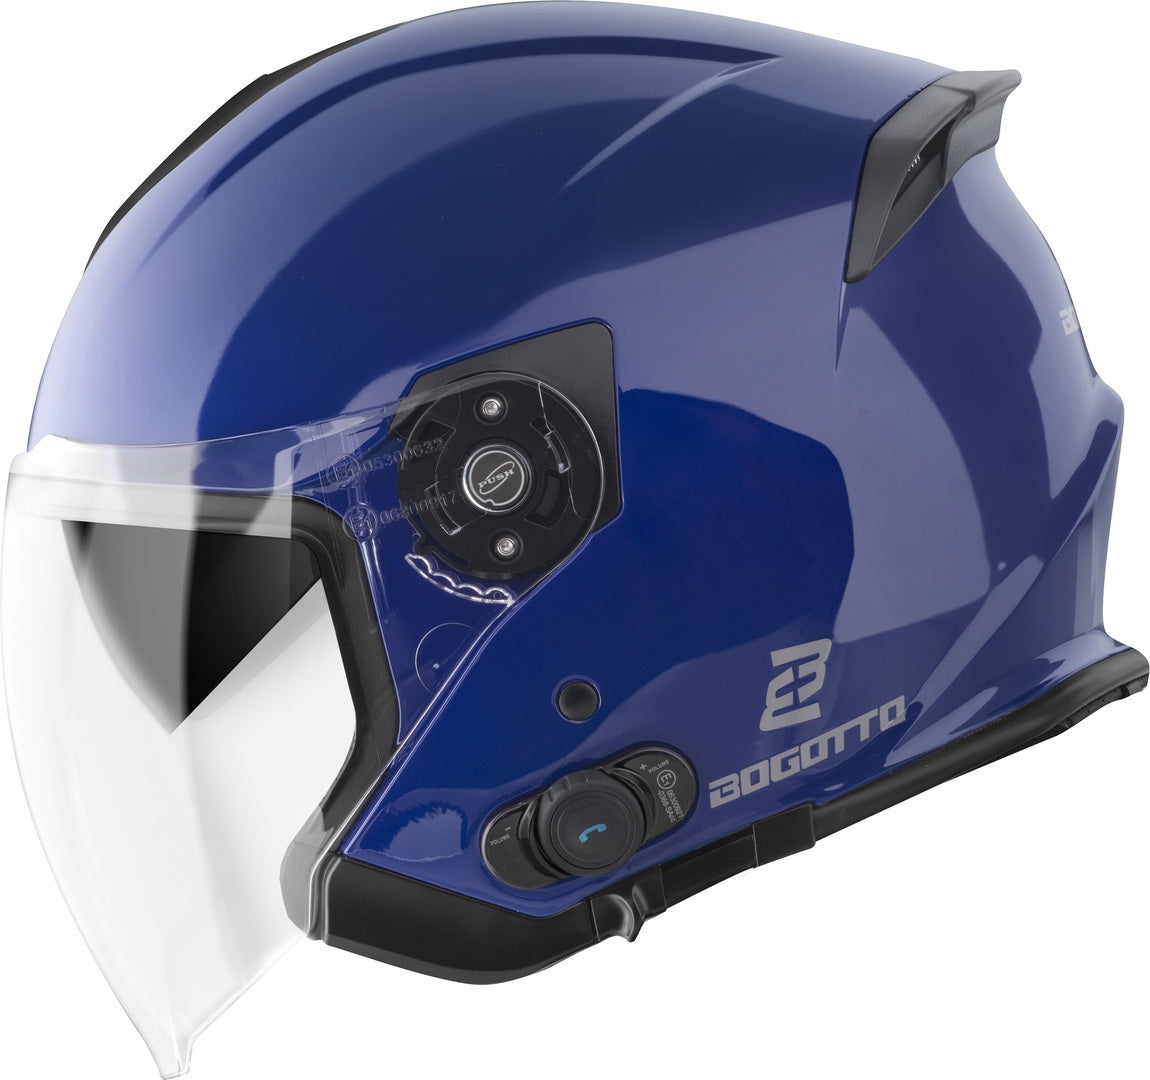 Bogotto H586 BT Solid Bluetooth Jet Helmet#color_blue